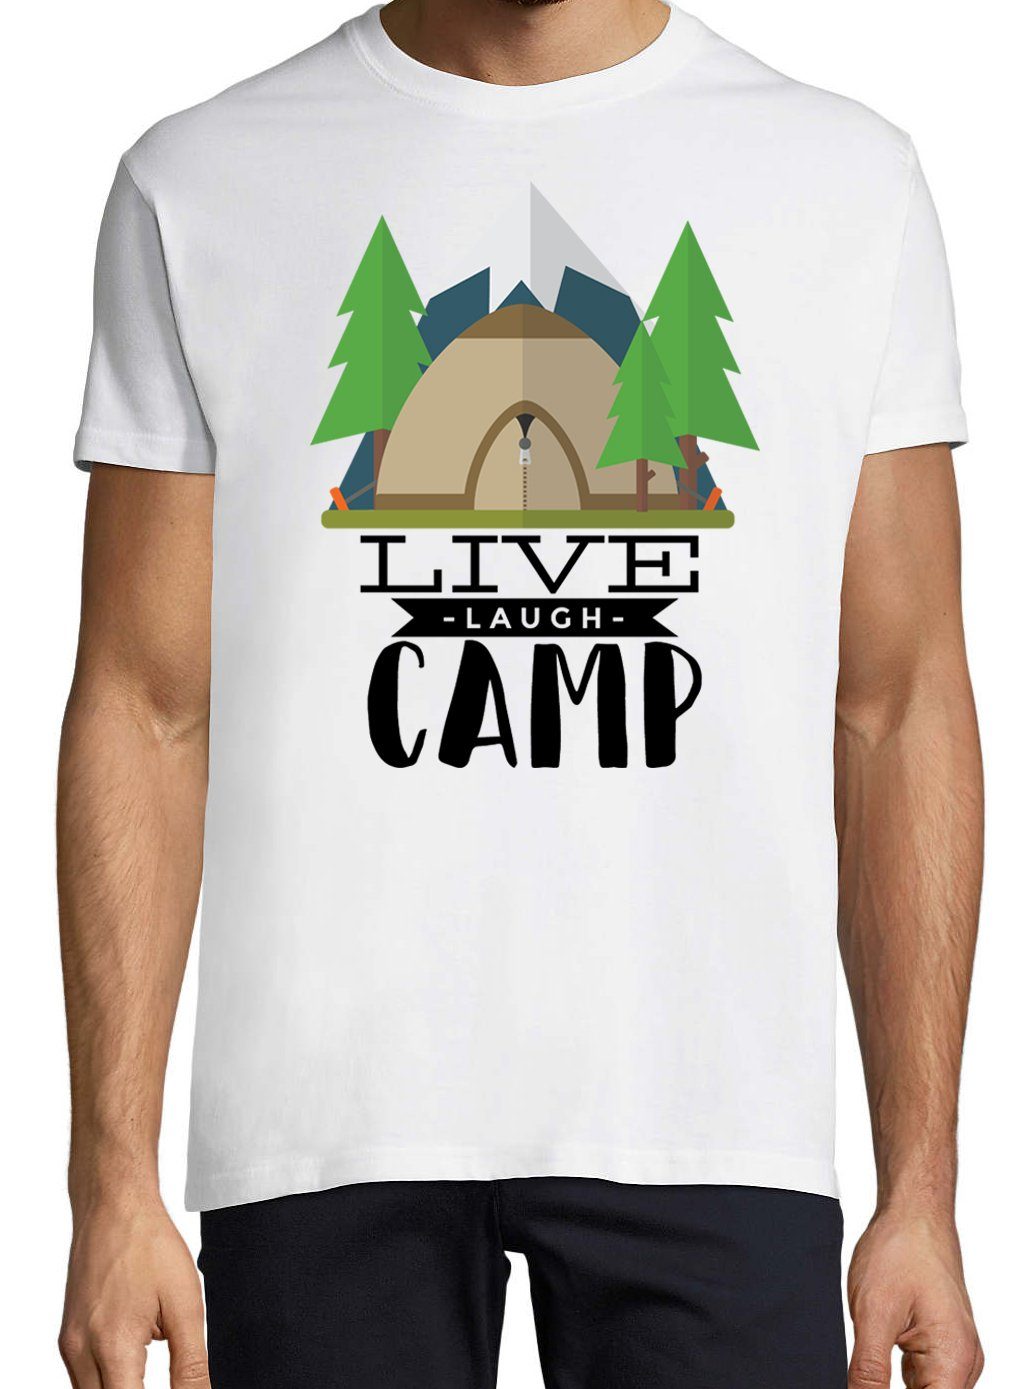 Camp T-Shirt Laugh T-Shirt Weiss Live mit Designz Trendigem Youth Herren Frontdruck